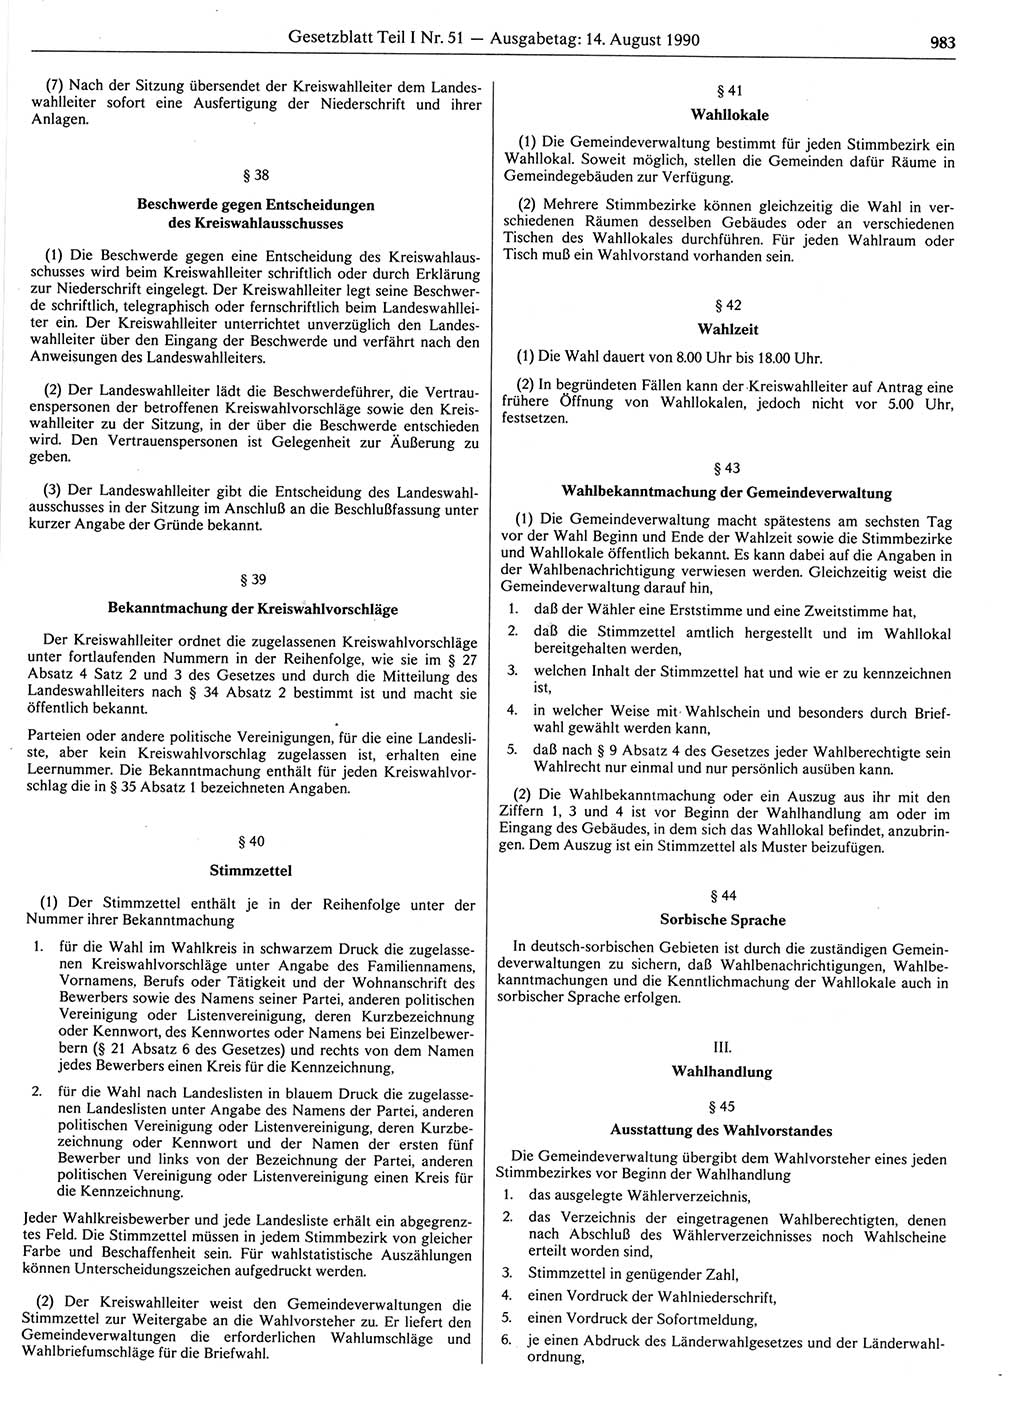 Gesetzblatt (GBl.) der Deutschen Demokratischen Republik (DDR) Teil Ⅰ 1990, Seite 983 (GBl. DDR Ⅰ 1990, S. 983)